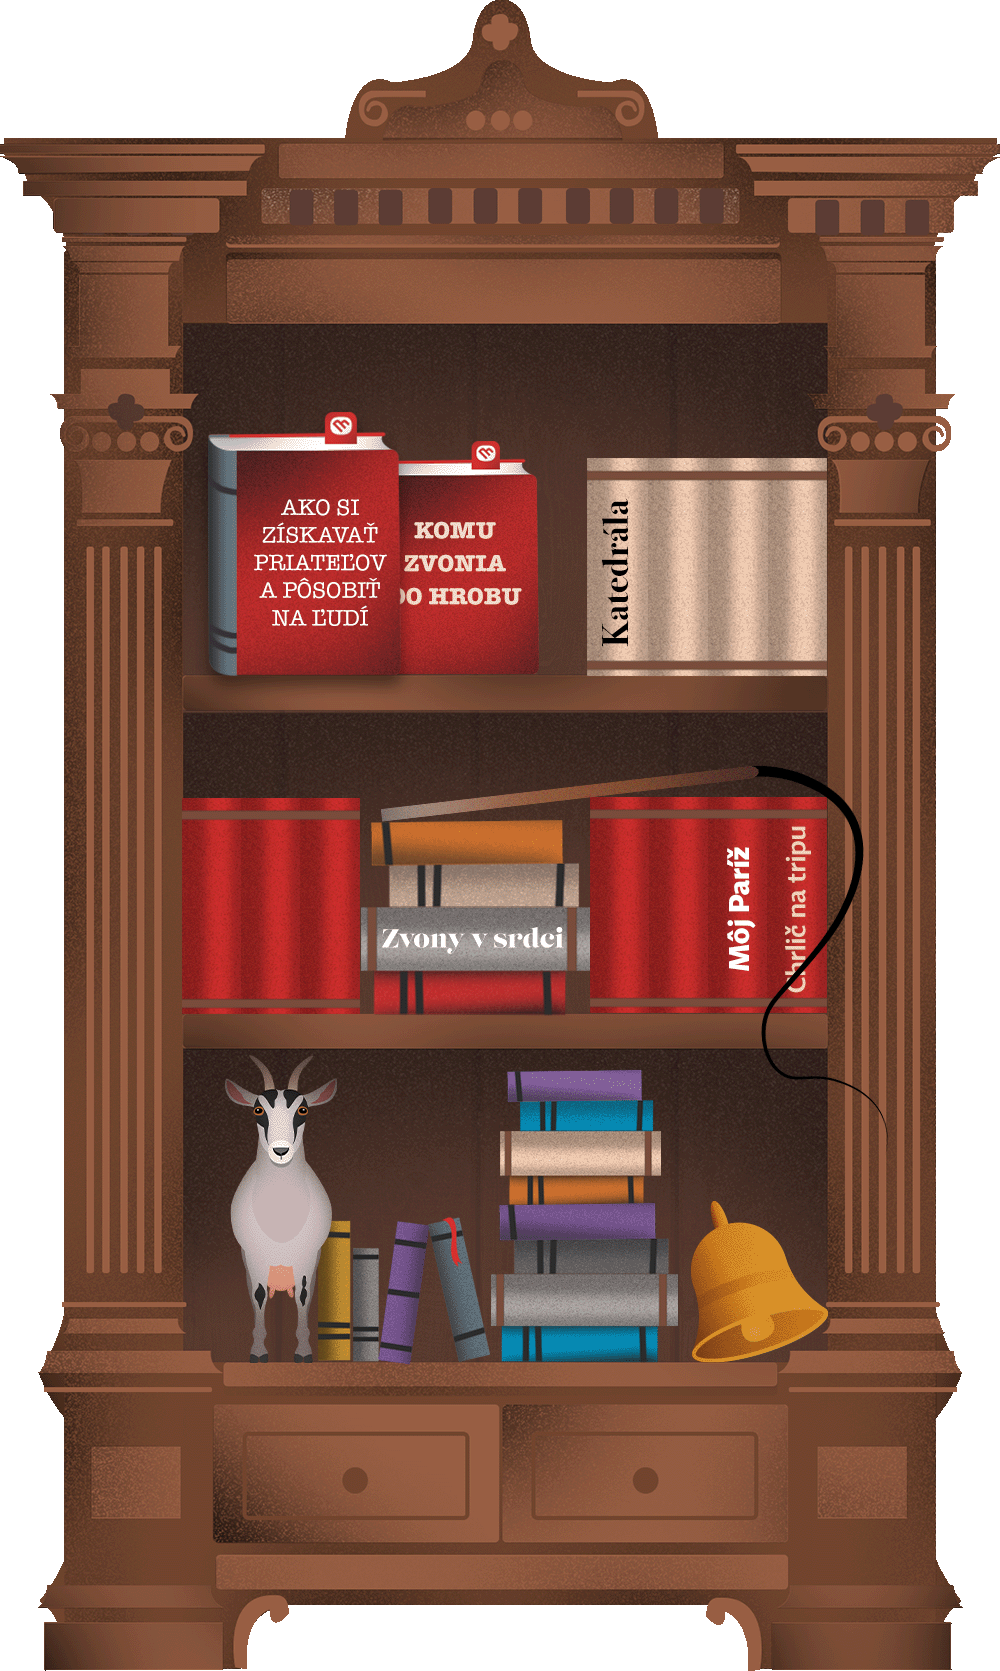 Táto knižnica obsahuje nasledovné knihy a predmety: 

Kniha: Ako si získavať priateľov a pôsobiť na ľudí,
                            Kniha: Zvony v srdci,
                            Kniha: Chrlič na tripe 

Predmet: Bič,
                            Predmet: Koza
                            Predmet: malý zvonček 

Kniha: Katedrála,
                            Kniha: Komu zvonia do hrobu
                            Kniha: Môj Paríž